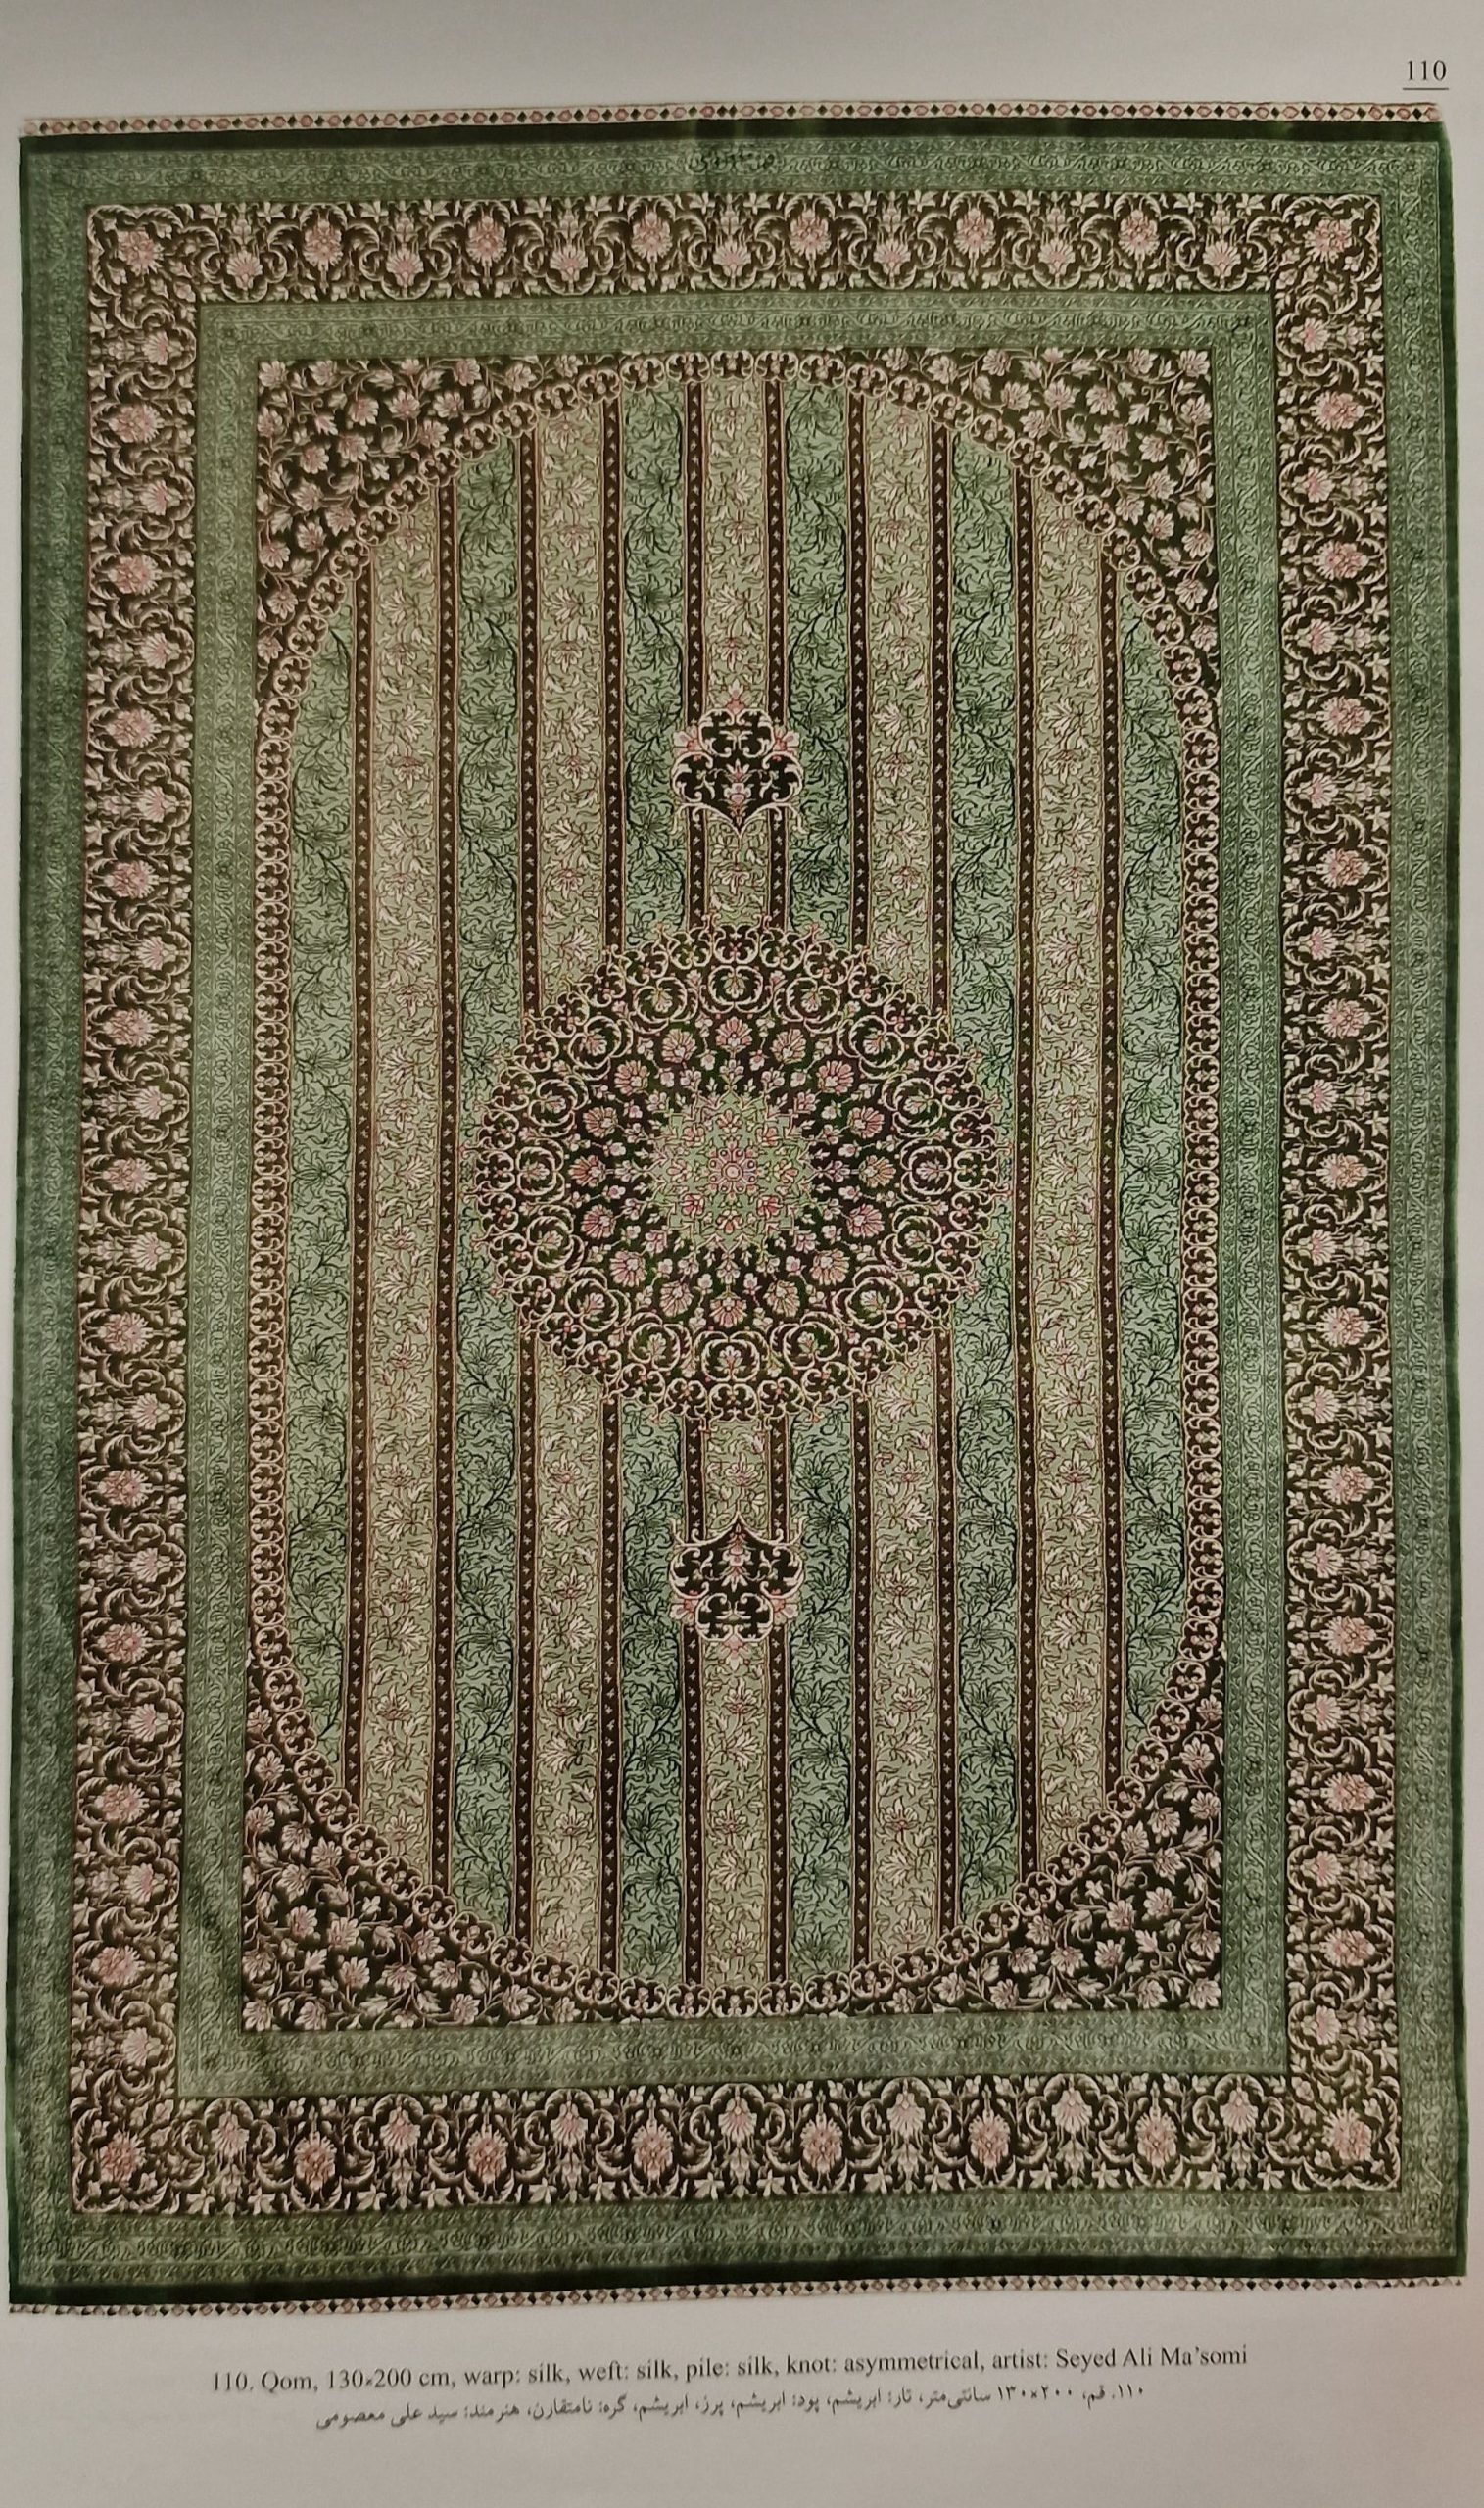 Iranian carpet